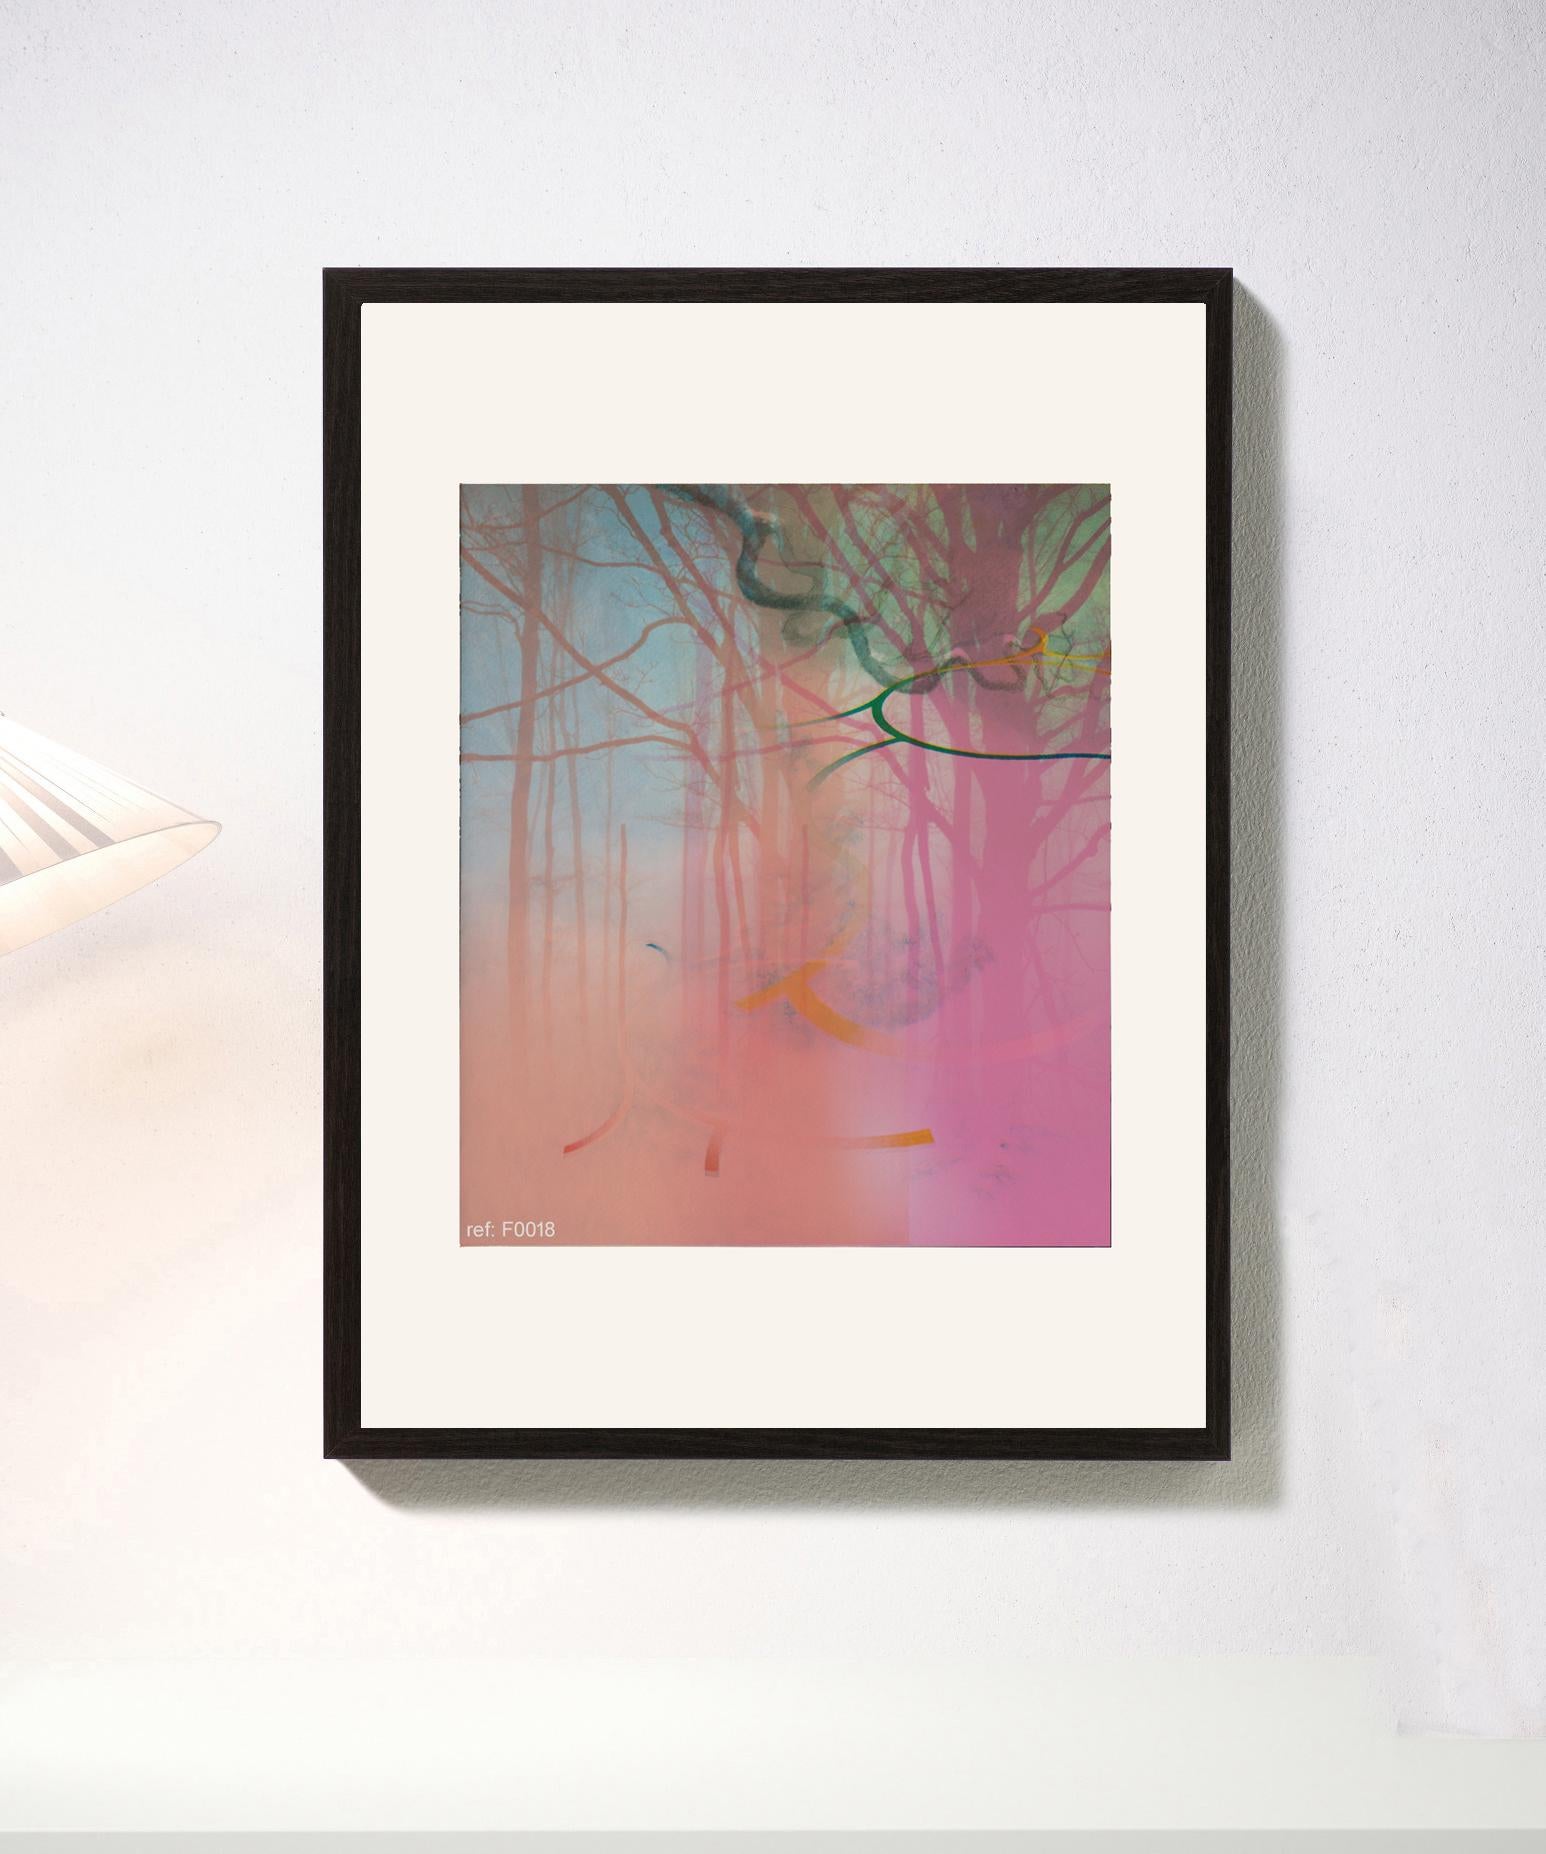 Forest rose - Contemporain, abstrait, moderne, Pop art, surréaliste, paysage - Print de Francisco Nicolás